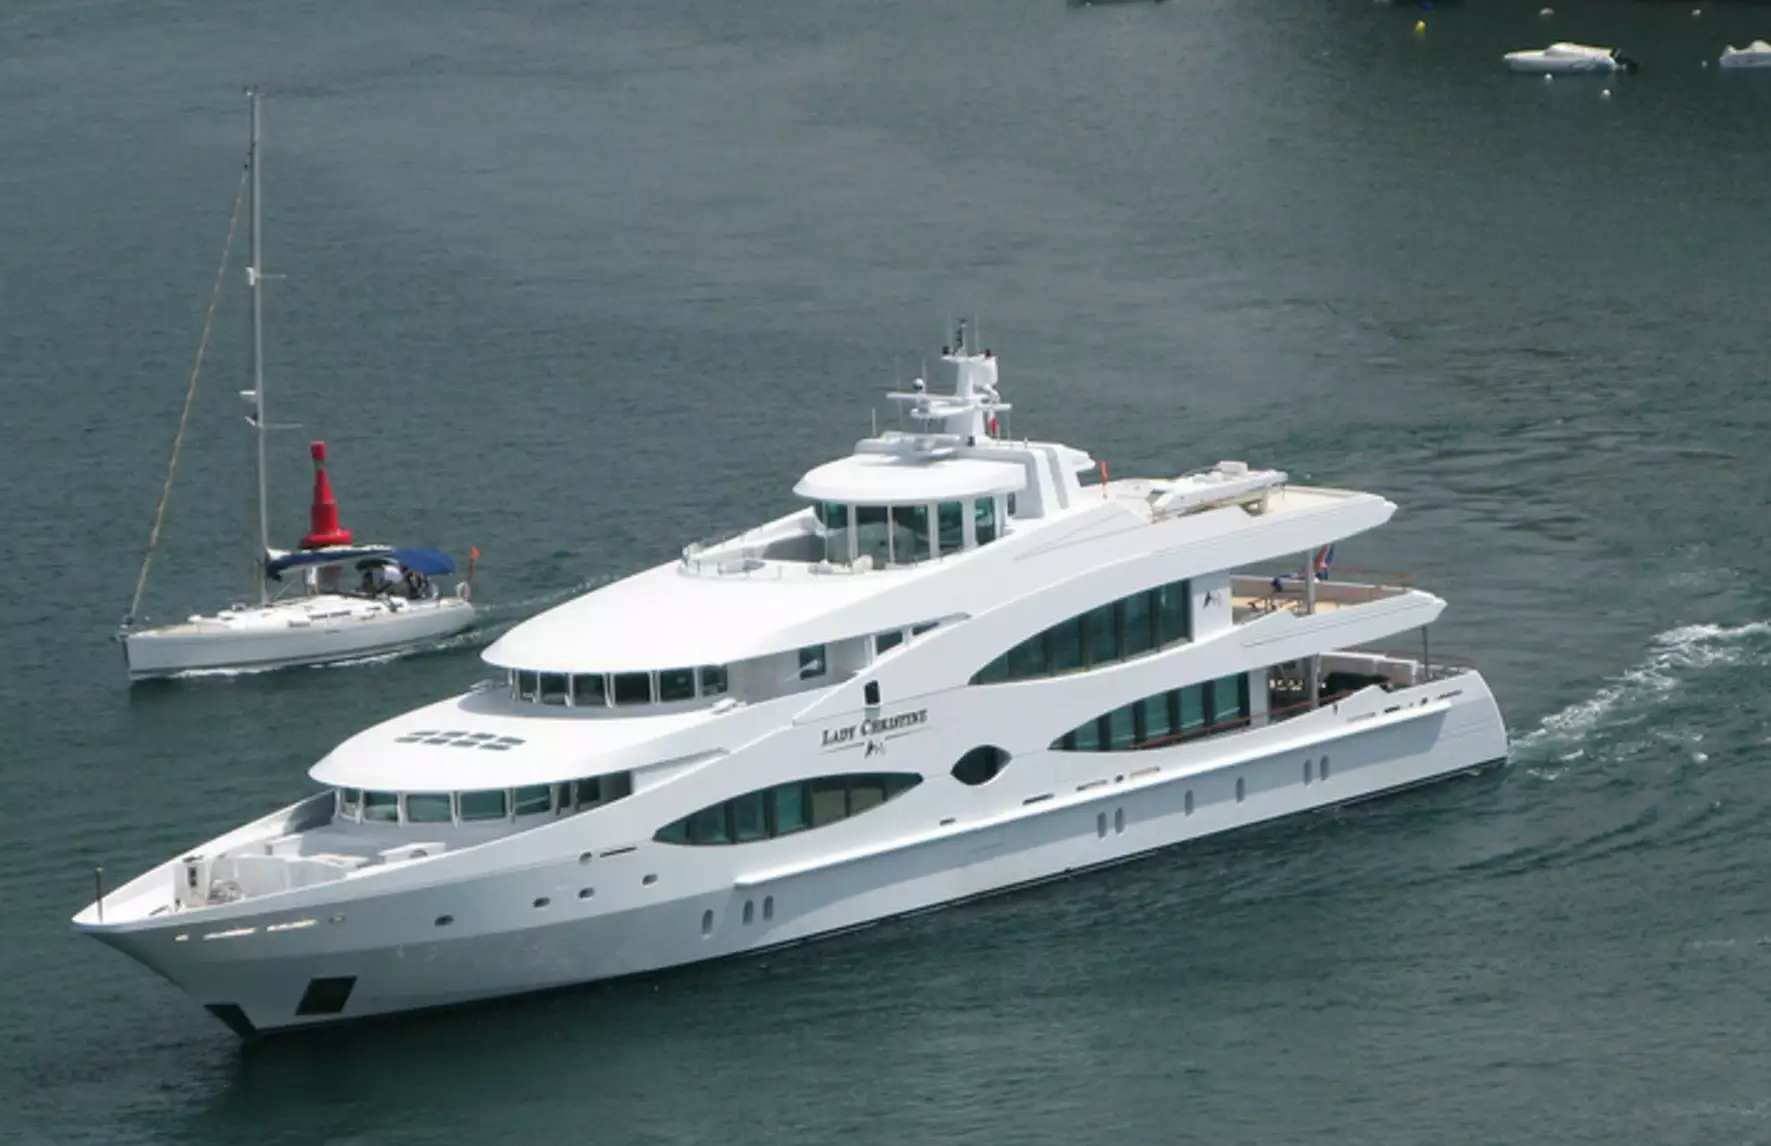 jacht Queen Mavia – 56m – Oceanco 